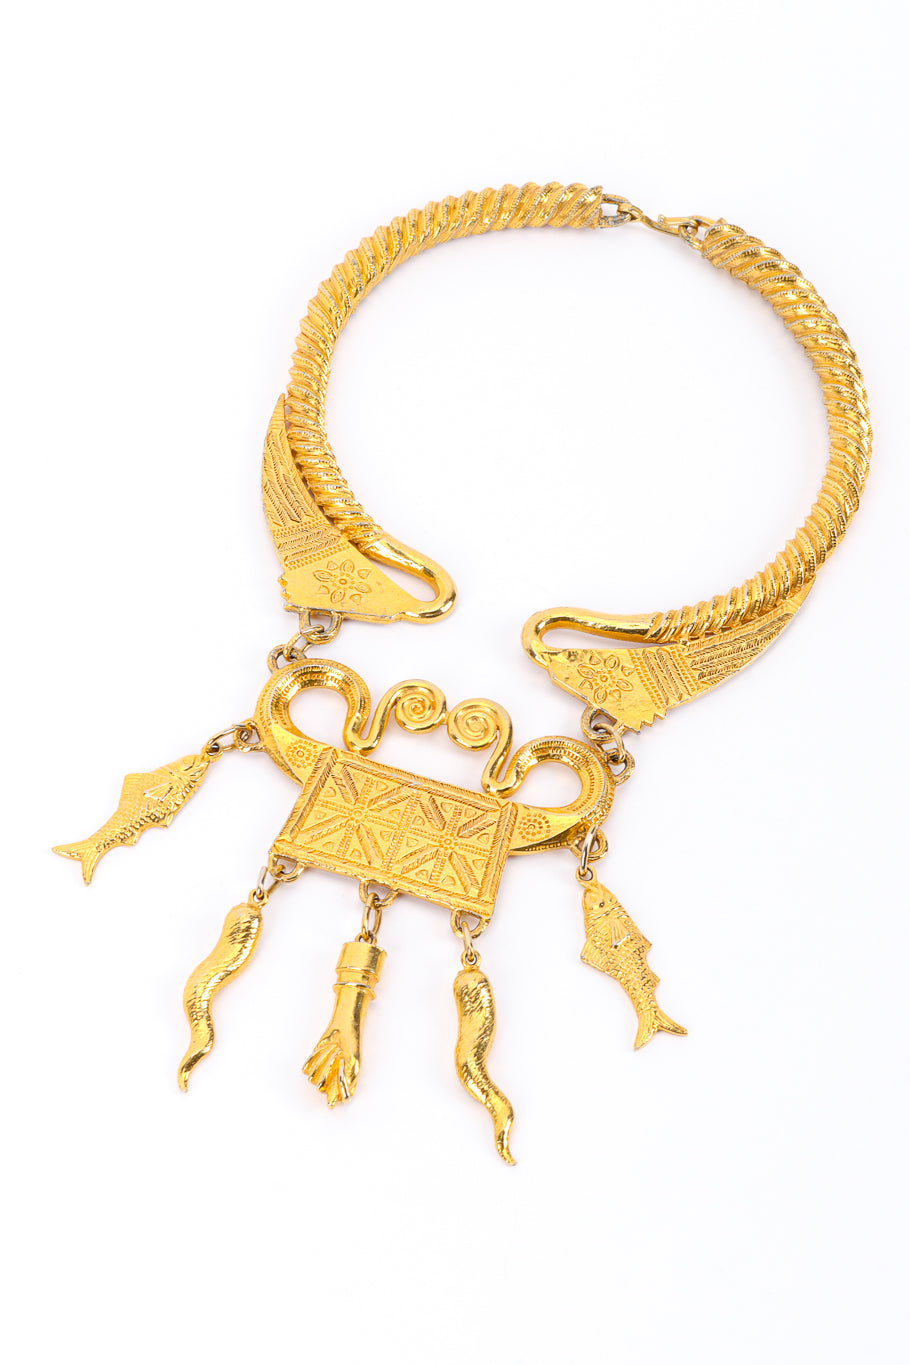 Etruscan Revival Amulet Necklace by Alexis Kirk @recessla